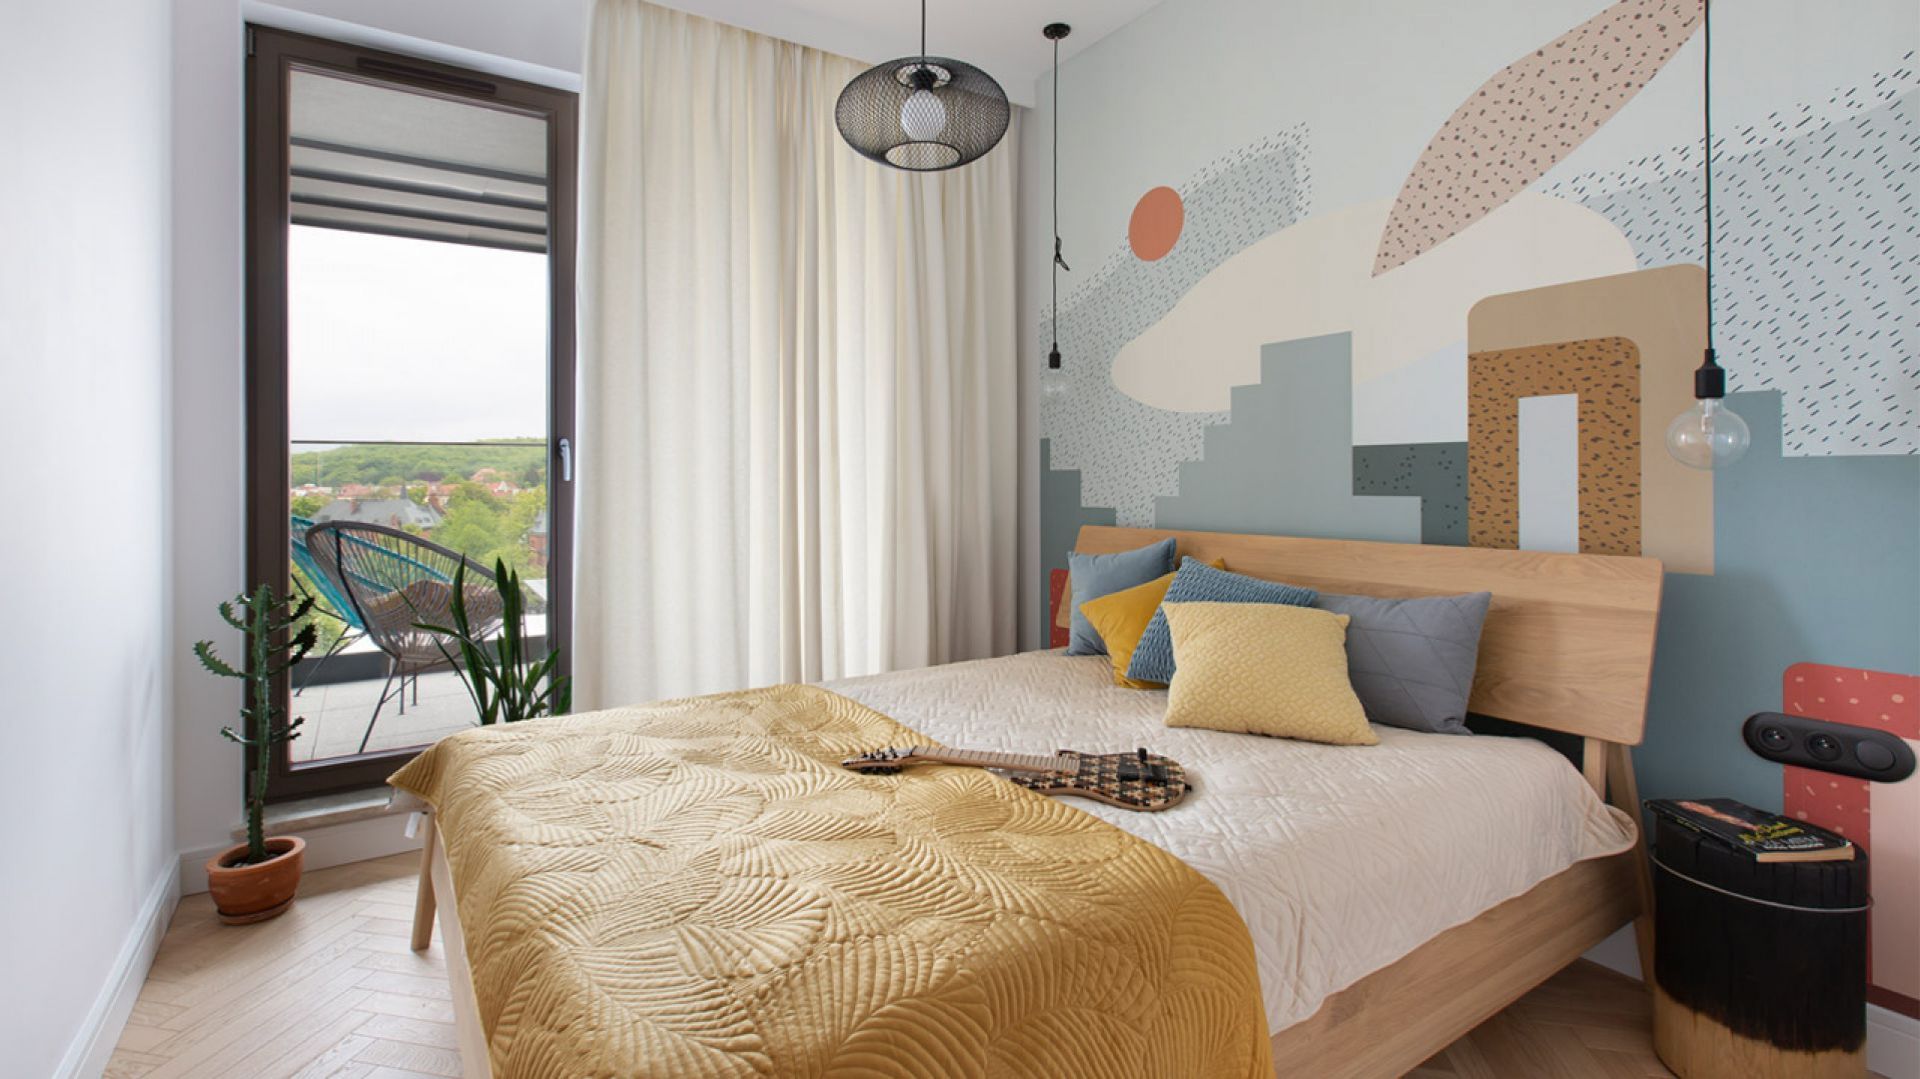 Ściana za łóżkiem w sypialni: 15 pomysłów na kolor w sypialni. Świetne zdjęcia!